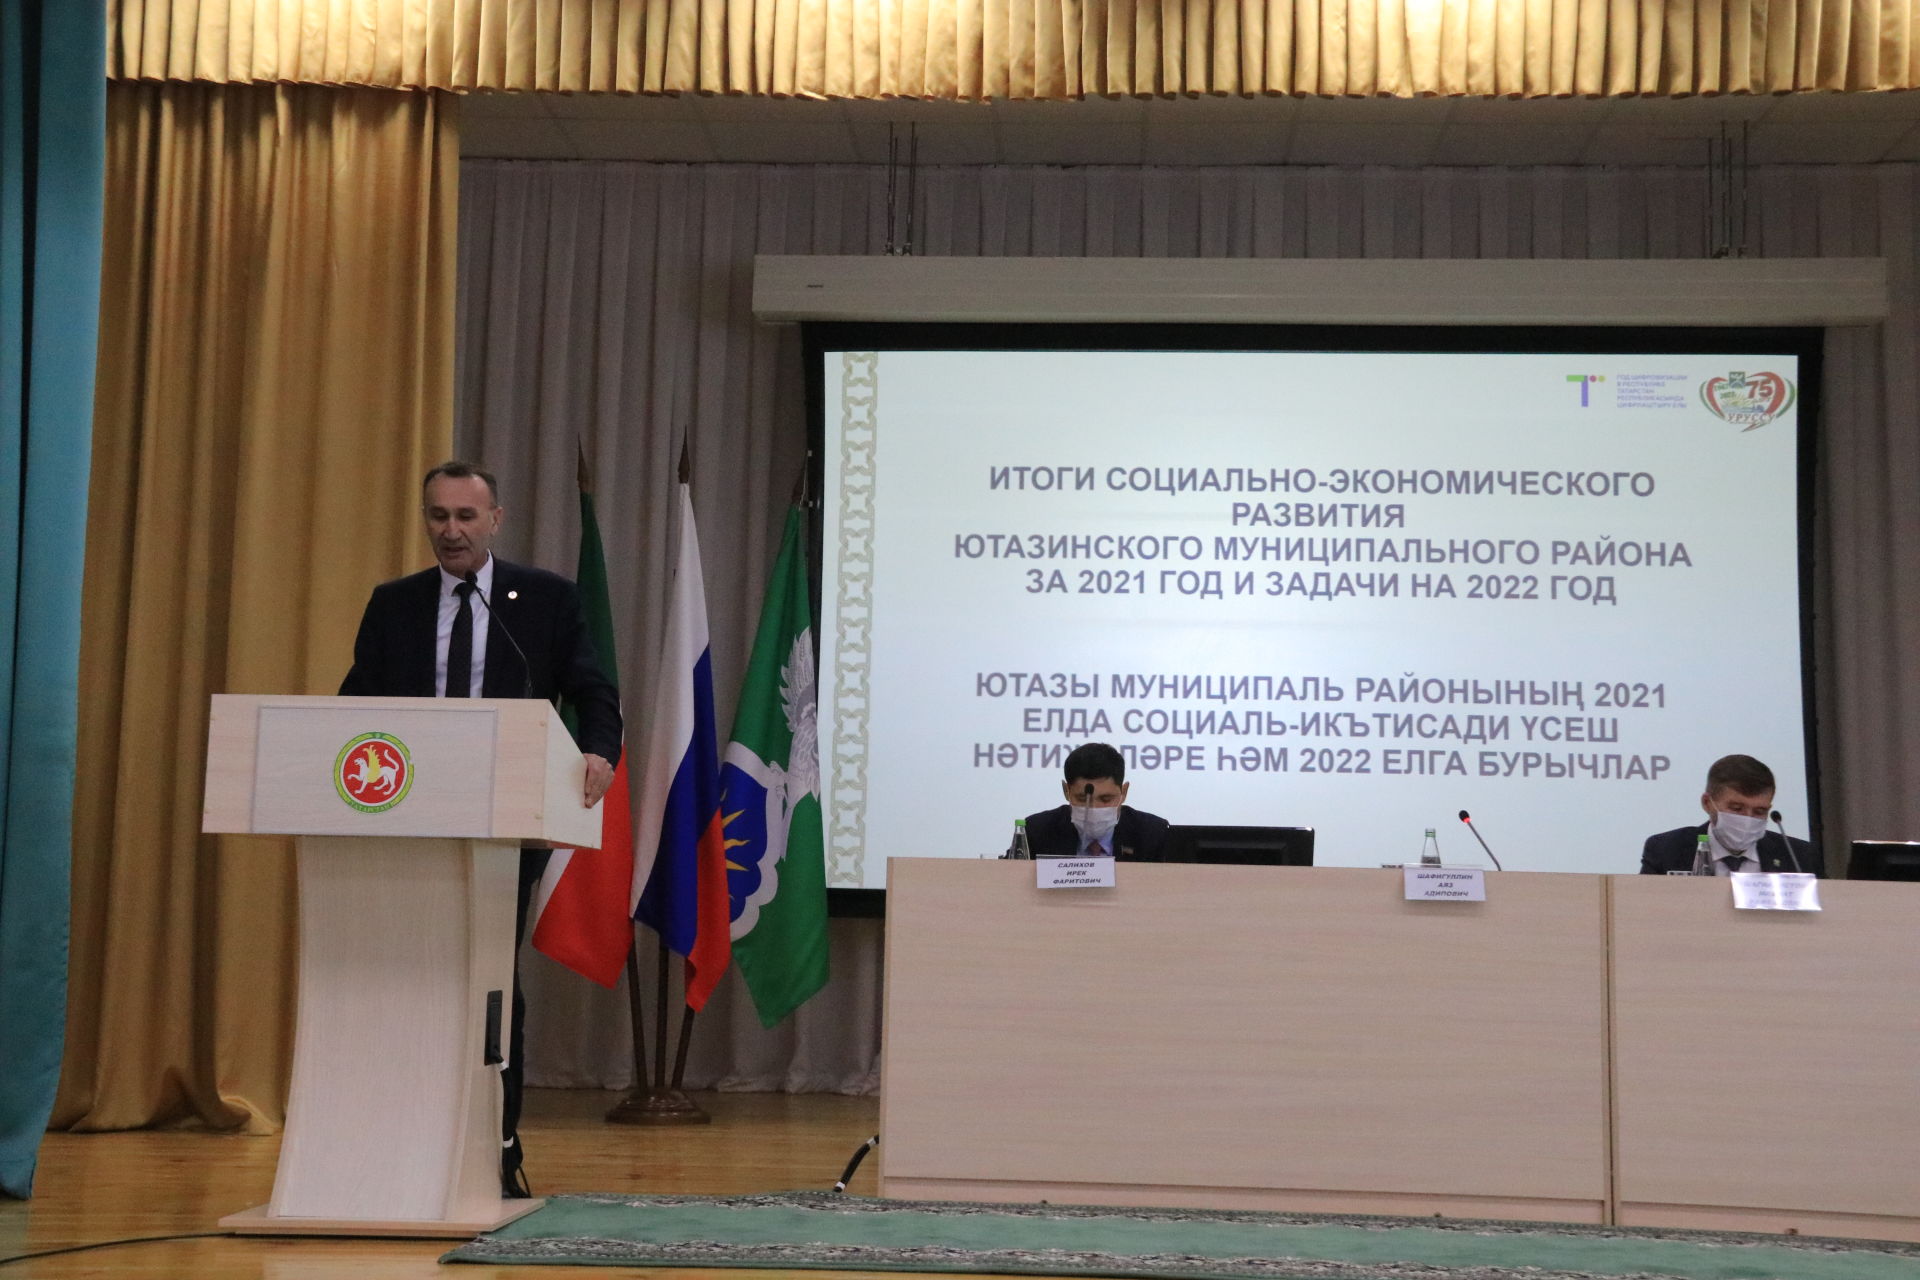 Об итогах социально-экономического развития Ютазинского муниципального района Республики Татарстан за 2021 год и задачах на 2022 год